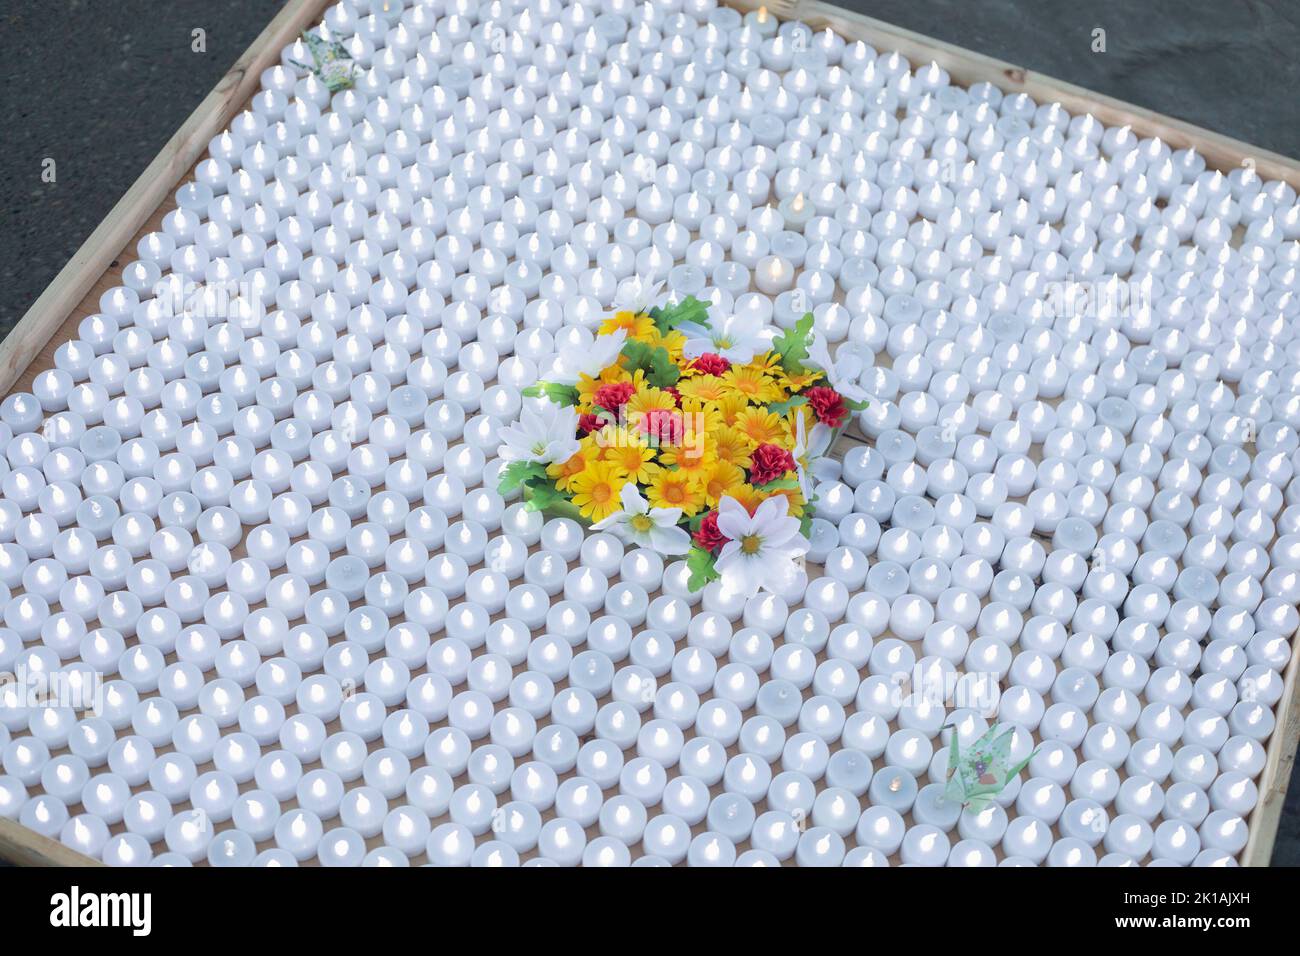 Una plataforma con muchas pequeñas velas blancas iluminadas decoradas con flores en la Ceremonia de la Paz con Linternas Flotantes en Olympic Plaza, Calgary, Canadá Foto de stock